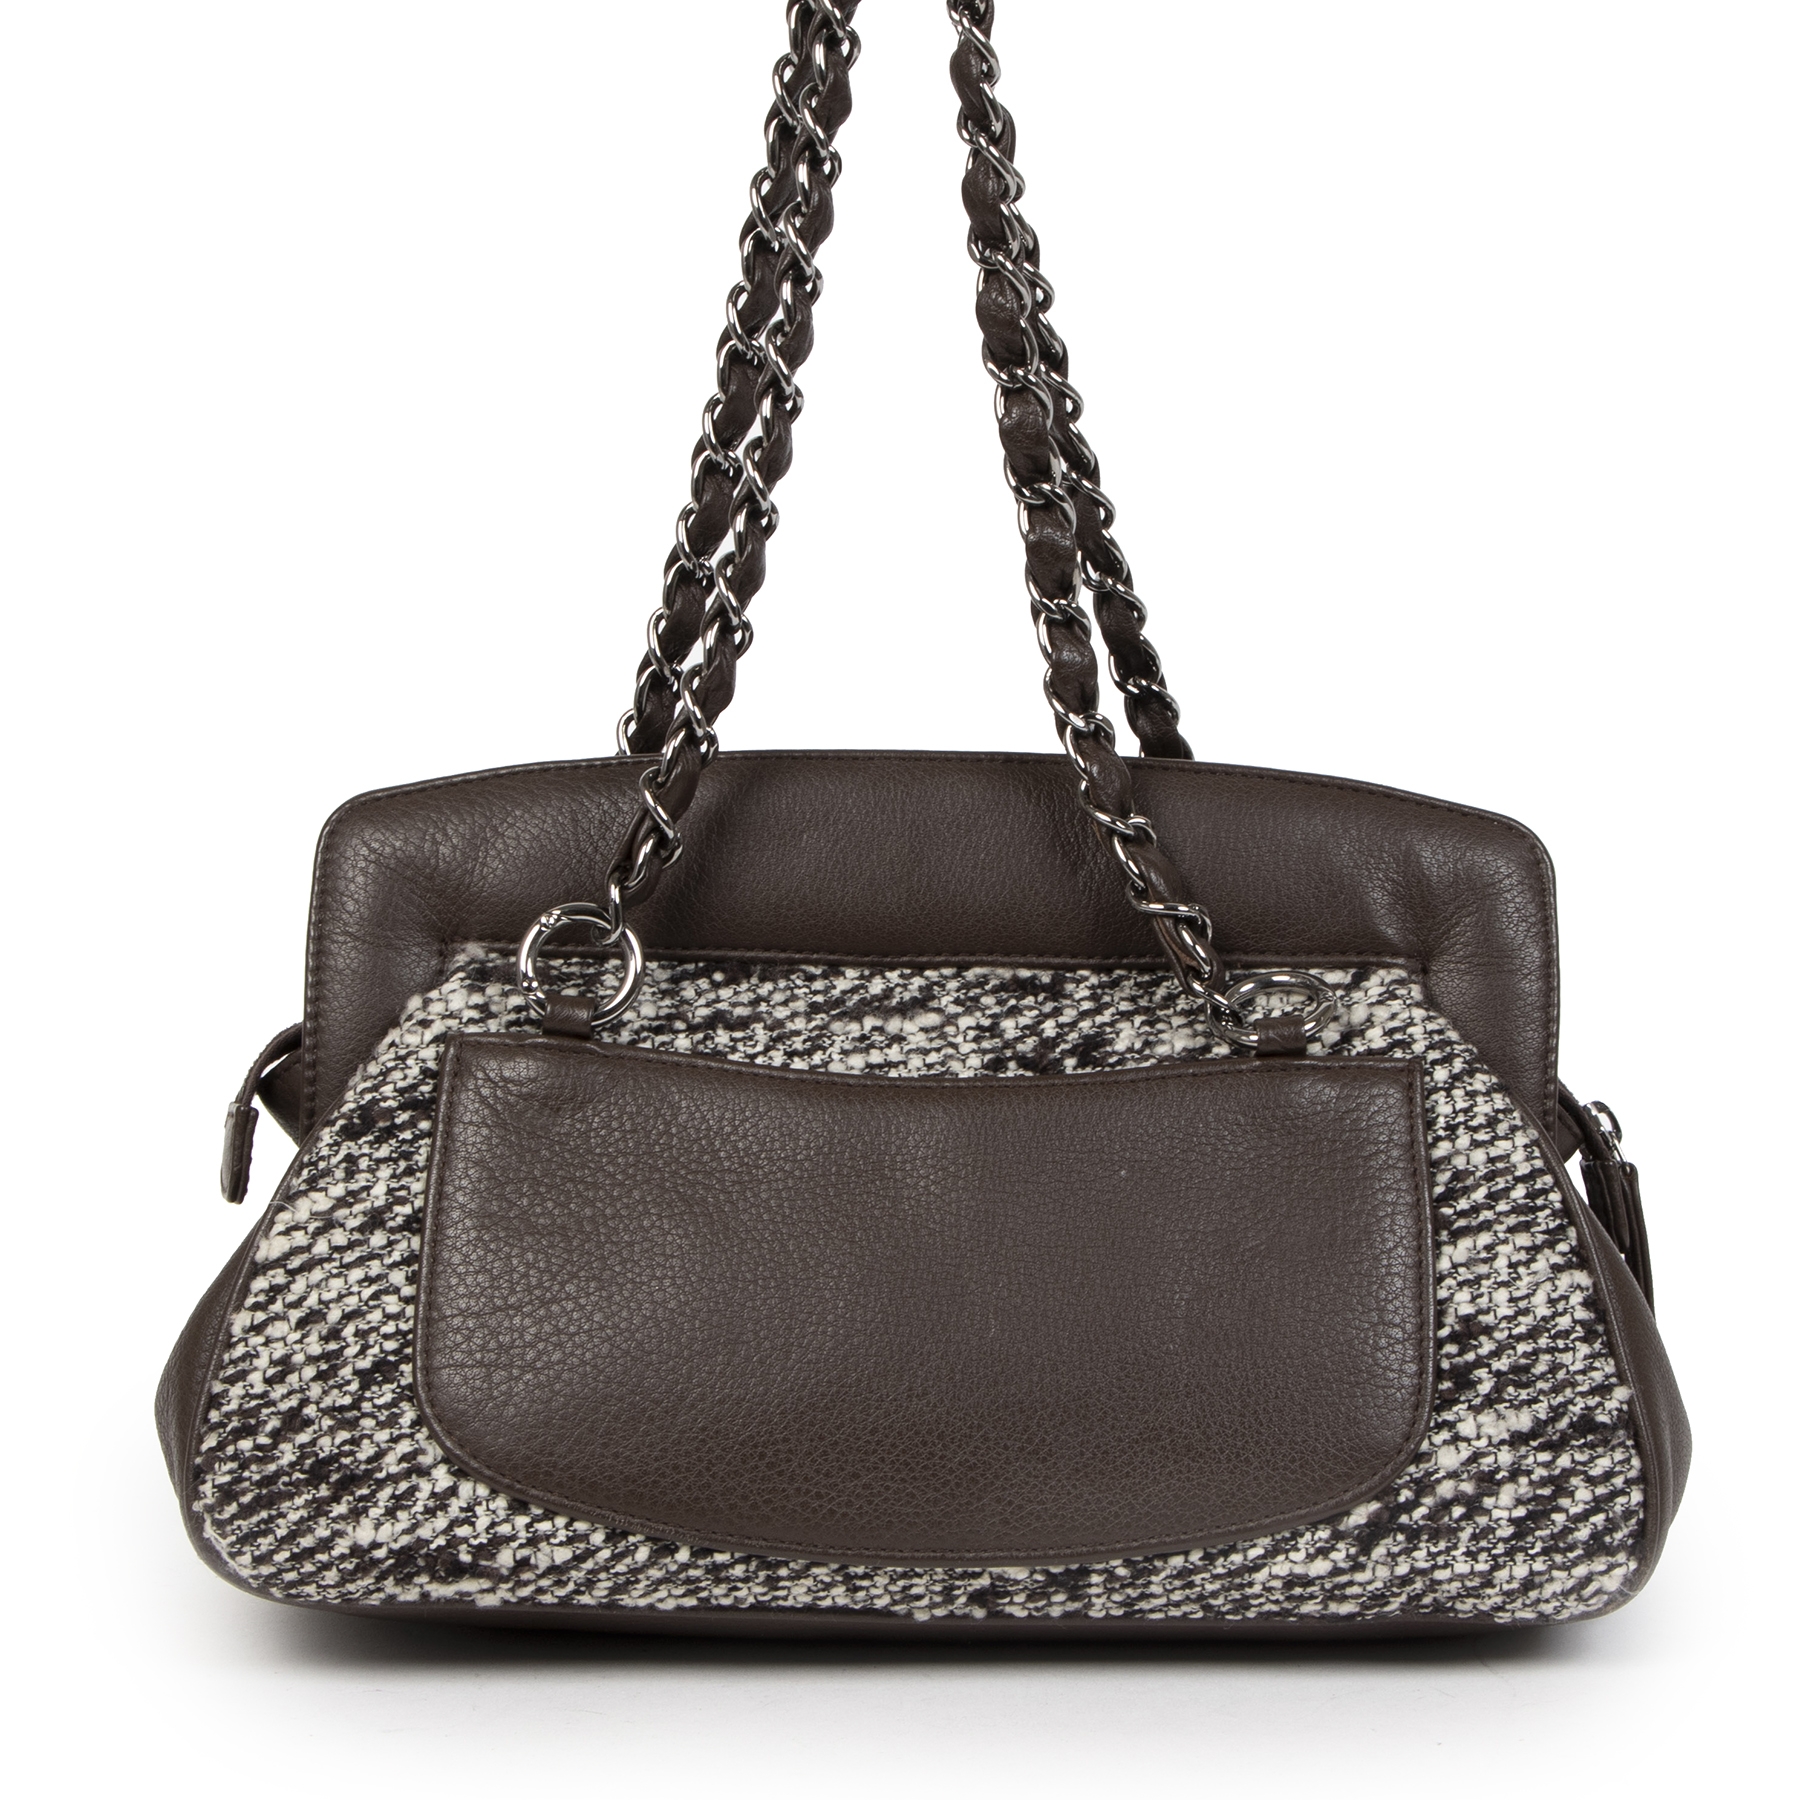 Labellov Shop safe online: authentic vintage Chanel clothes, bags, accessories. Vind tweedehands ...